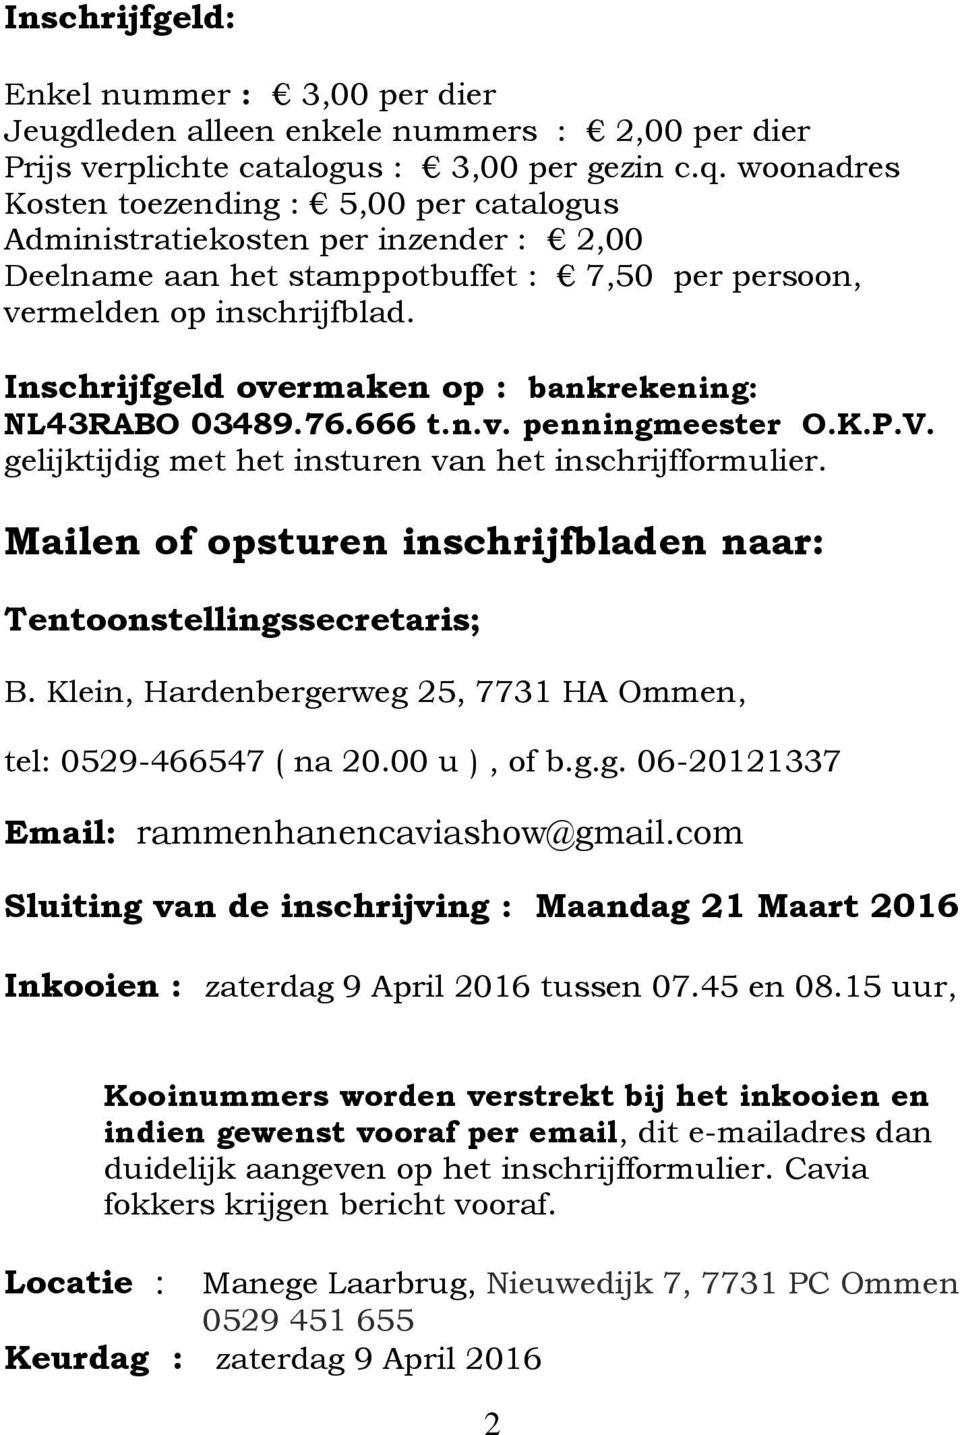 Inschrijfgeld overmaken op : bankrekening: NL43RABO 03489.76.666 t.n.v. penningmeester O.K.P.V. gelijktijdig met het insturen van het inschrijfformulier.